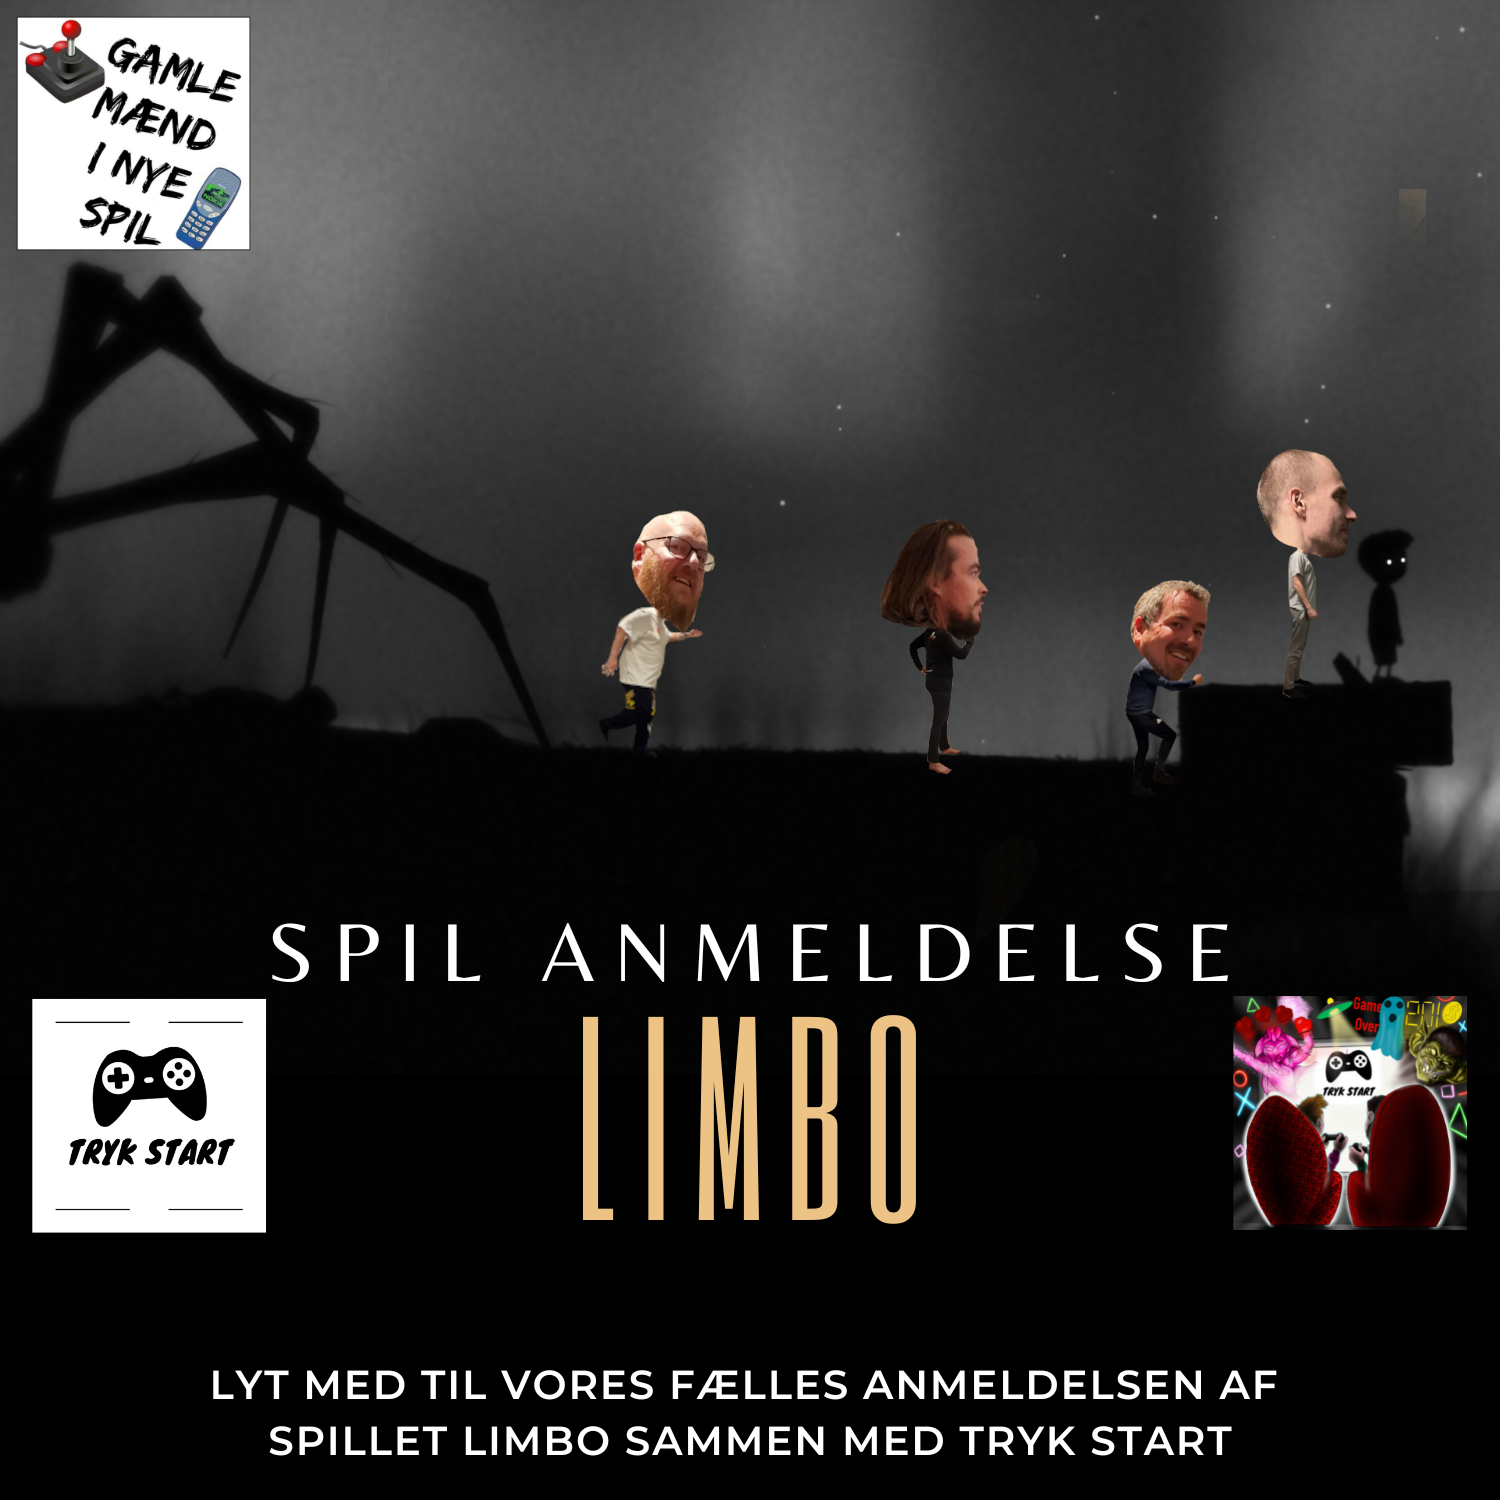 Spilanmeldelse af Limbo med gaming podcasten Tryk Start